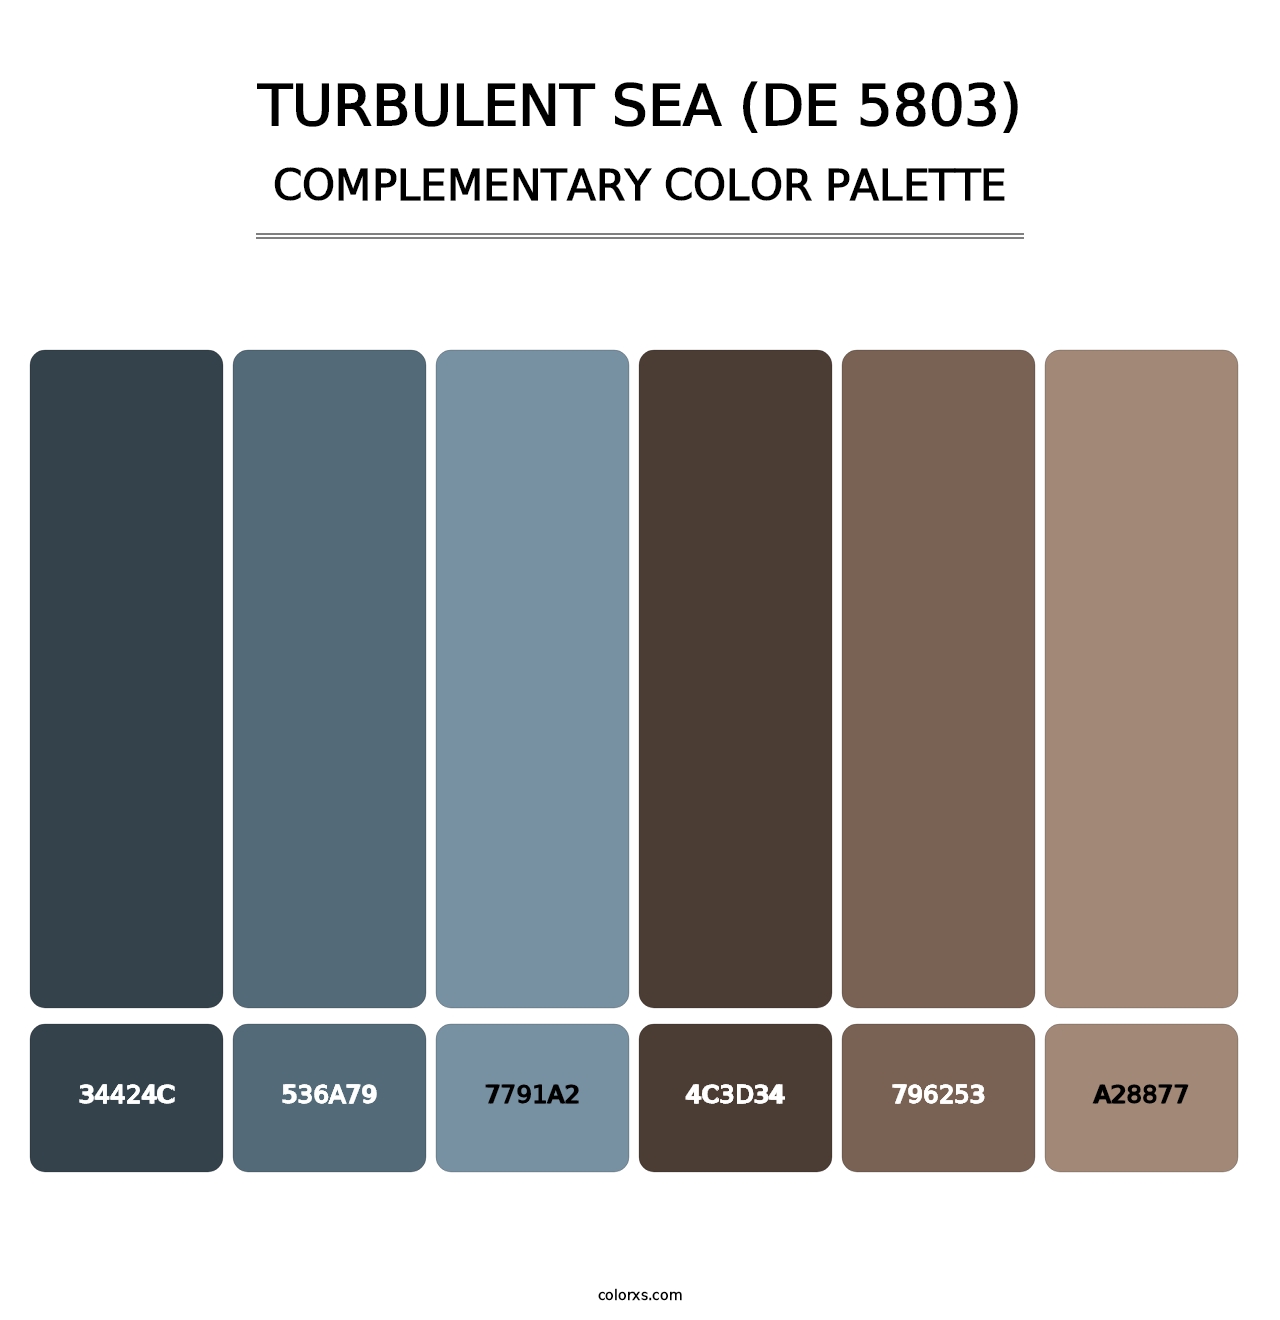 Turbulent Sea (DE 5803) - Complementary Color Palette